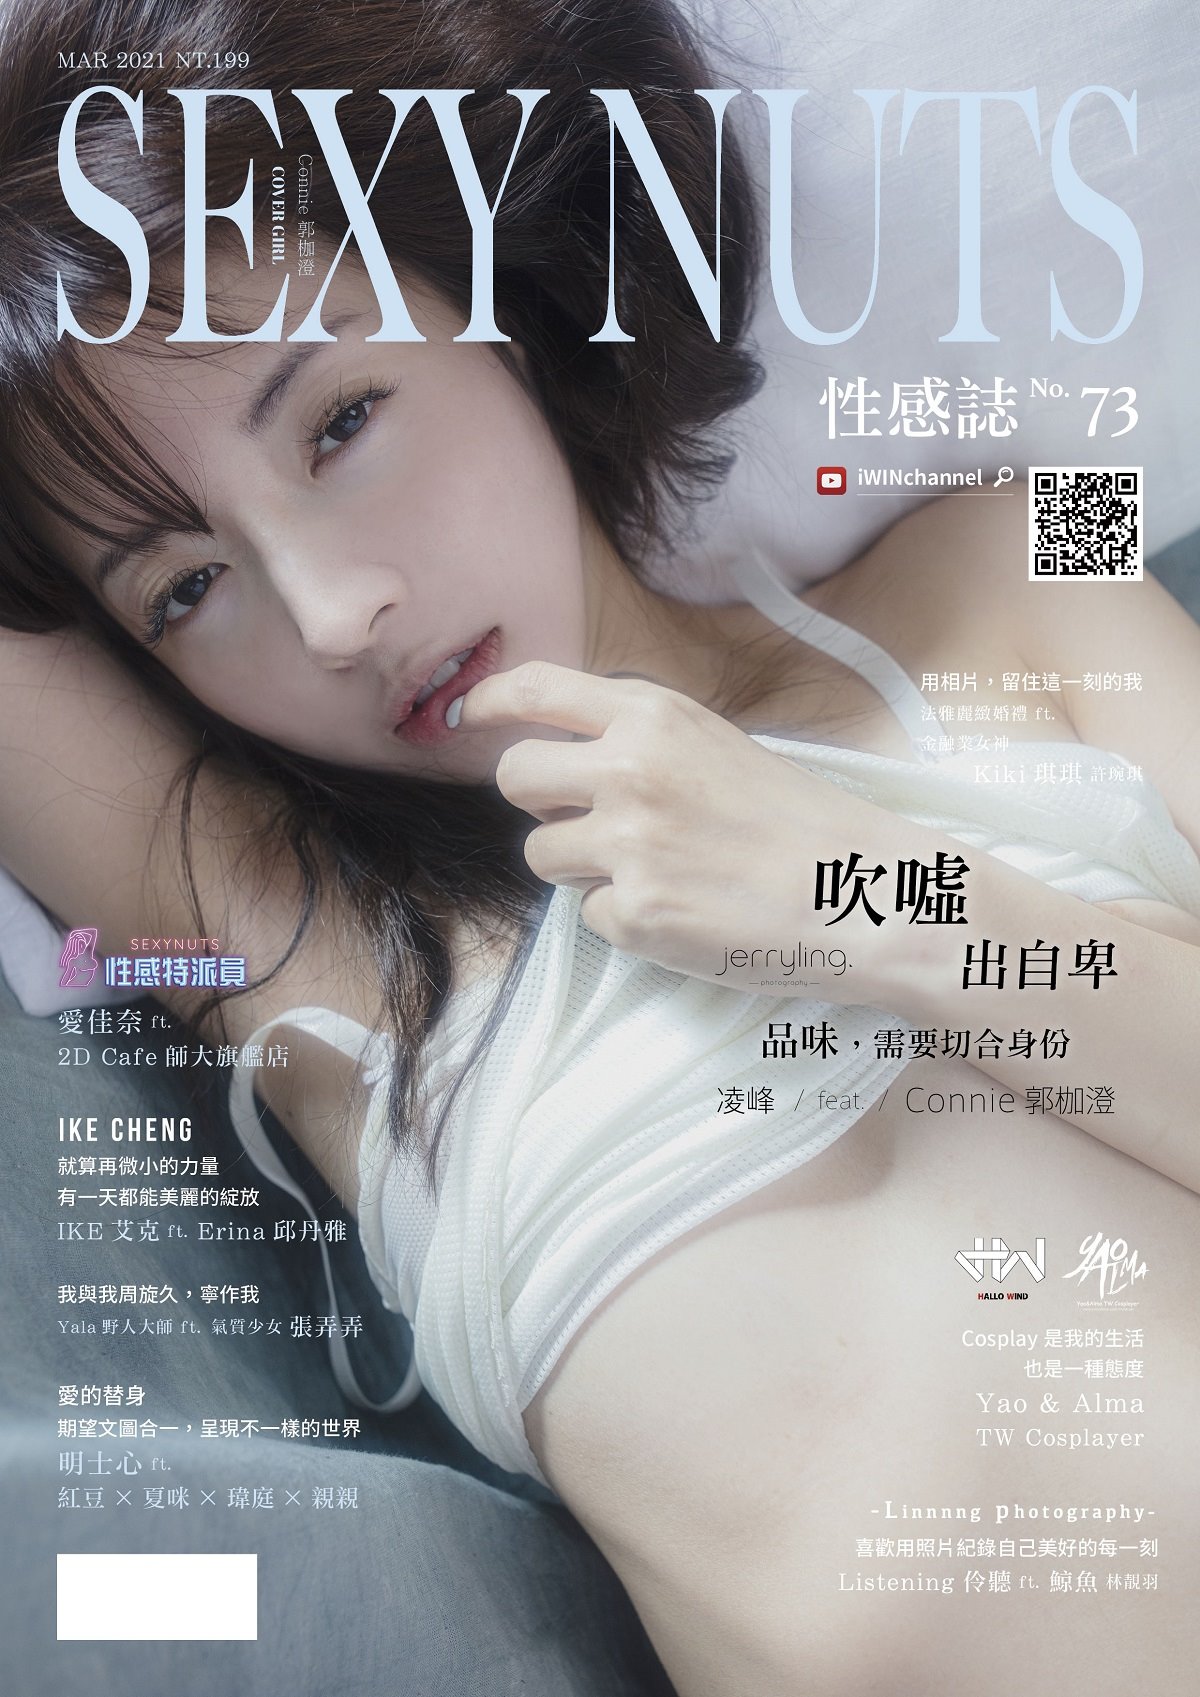 SEXY NUTS性感誌 3月號/2021第73期